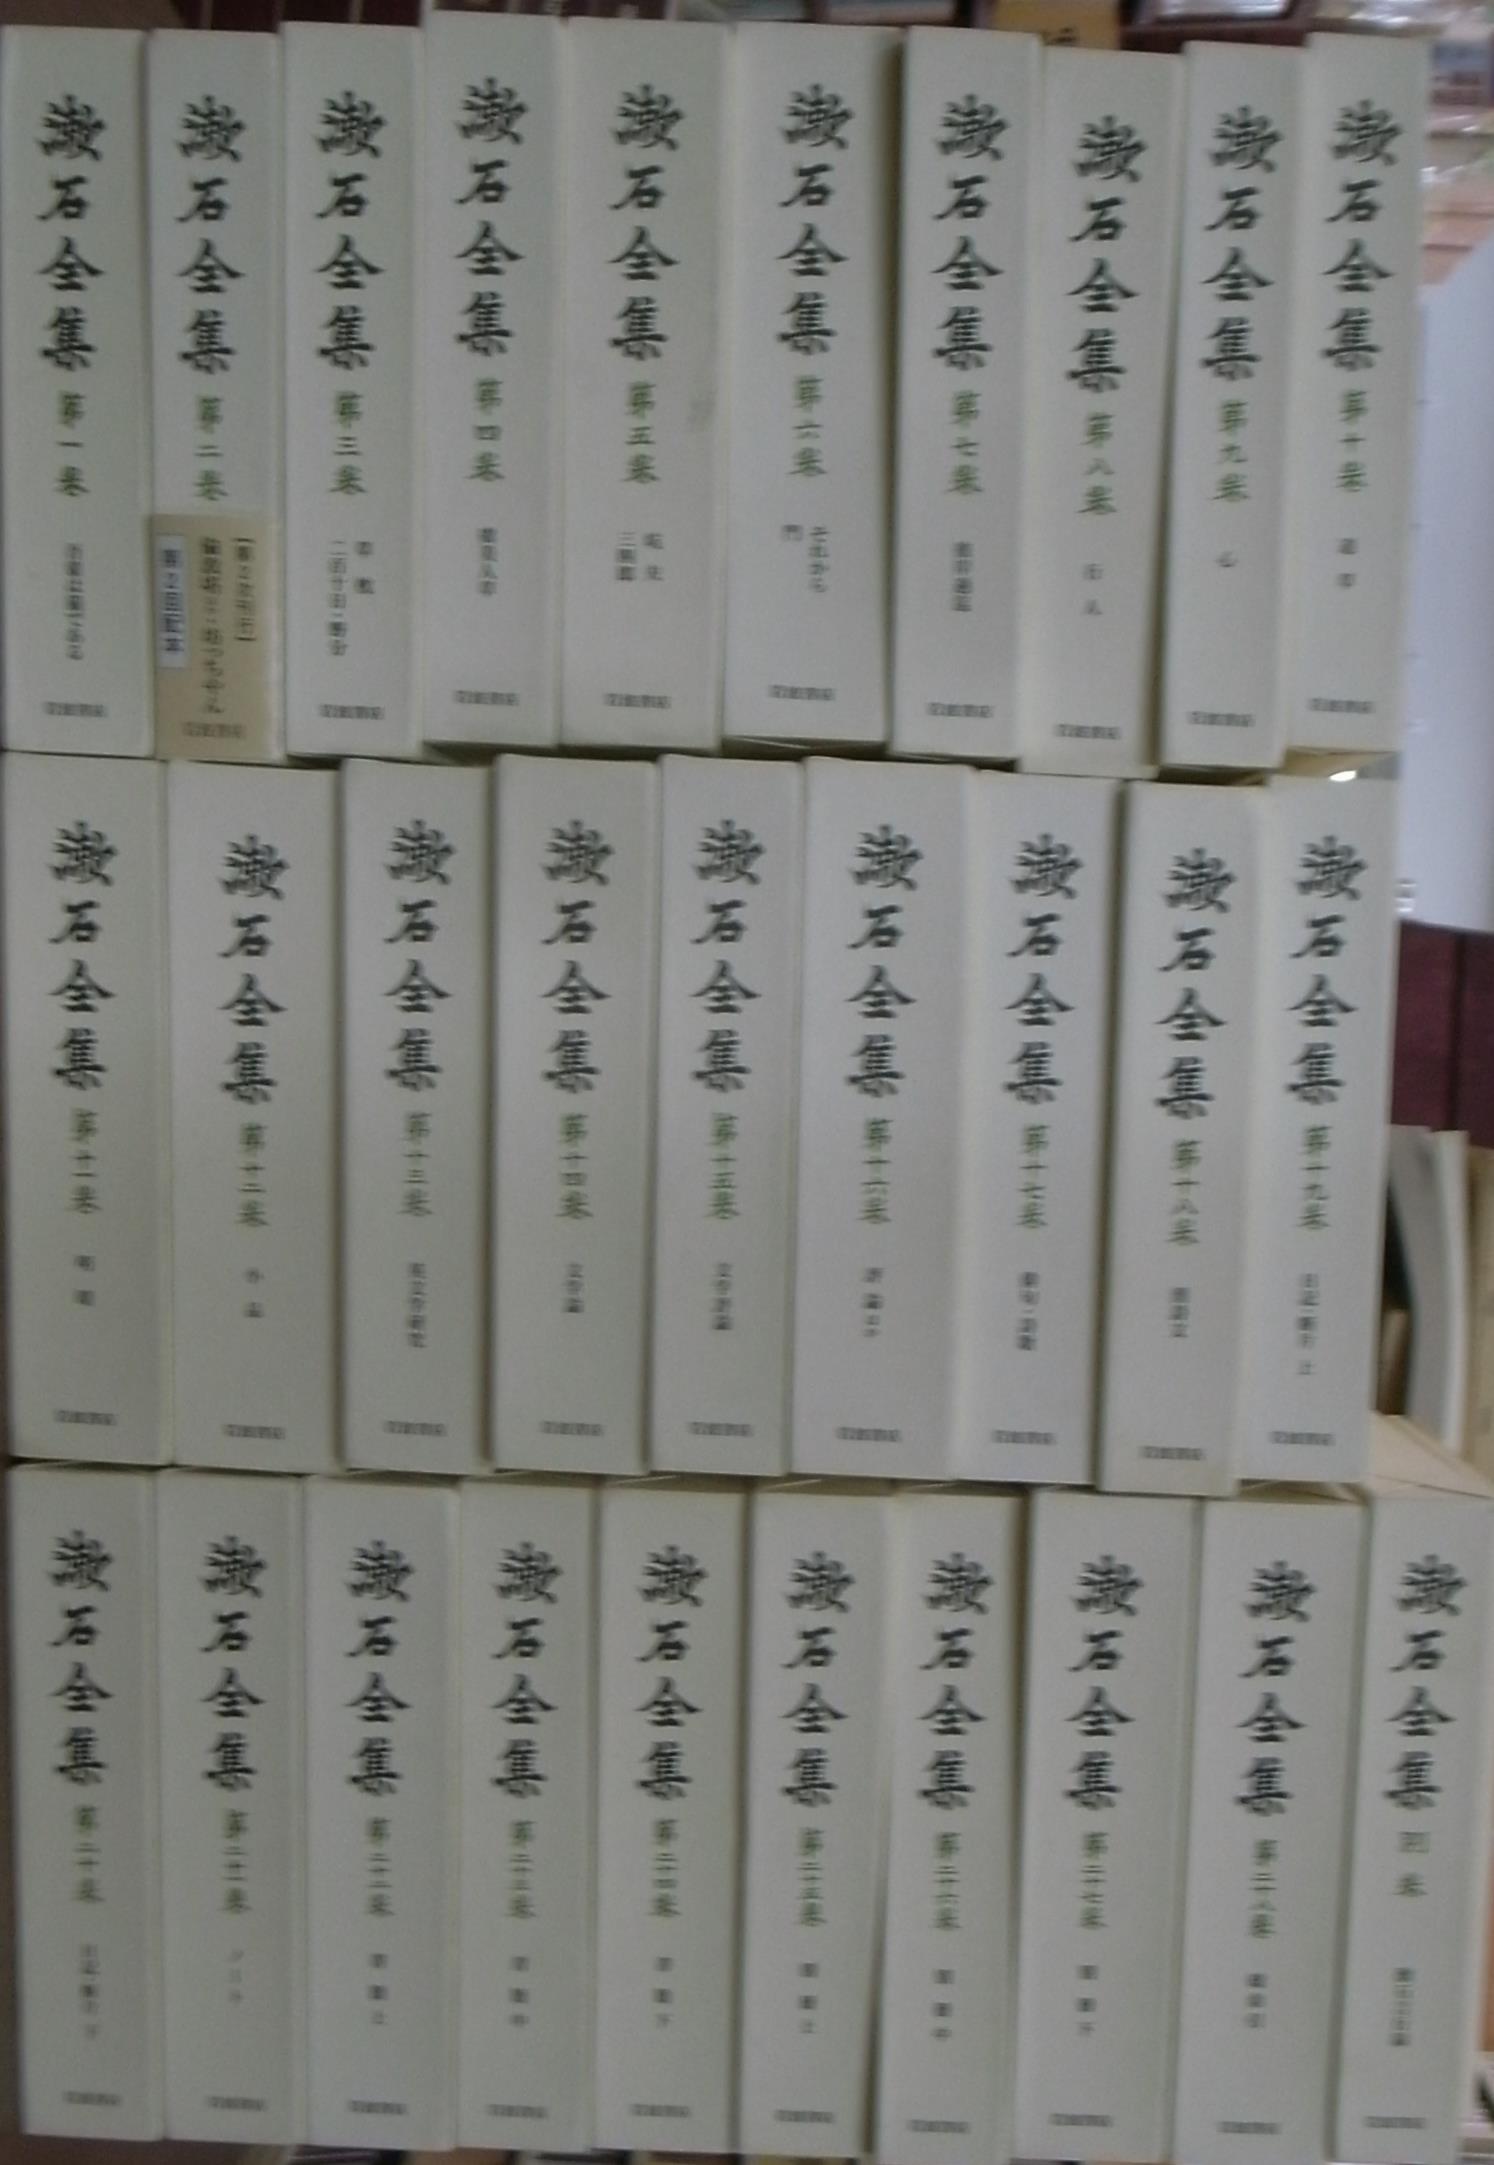 漱石全集 本巻２８冊、別巻１冊、補遺（一九九三年版）の計３０冊揃